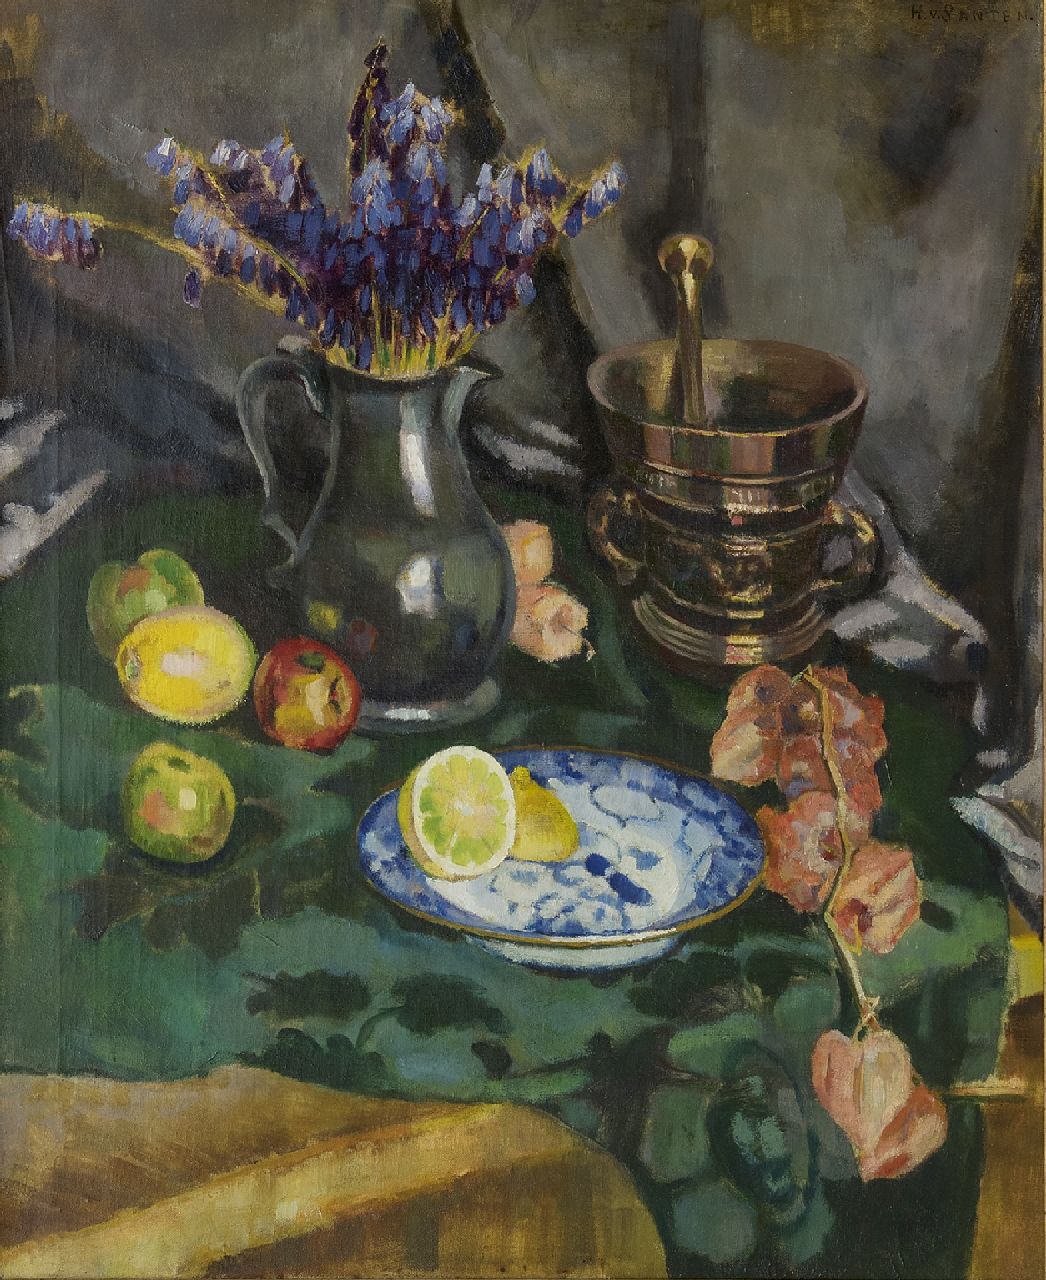 Santen A.J. van | Anna Jacoba 'Hans' van Santen, Stilleven met bloemen, citroen en vijzel, olieverf op doek 62,0 x 75,0 cm, gesigneerd rechtsboven